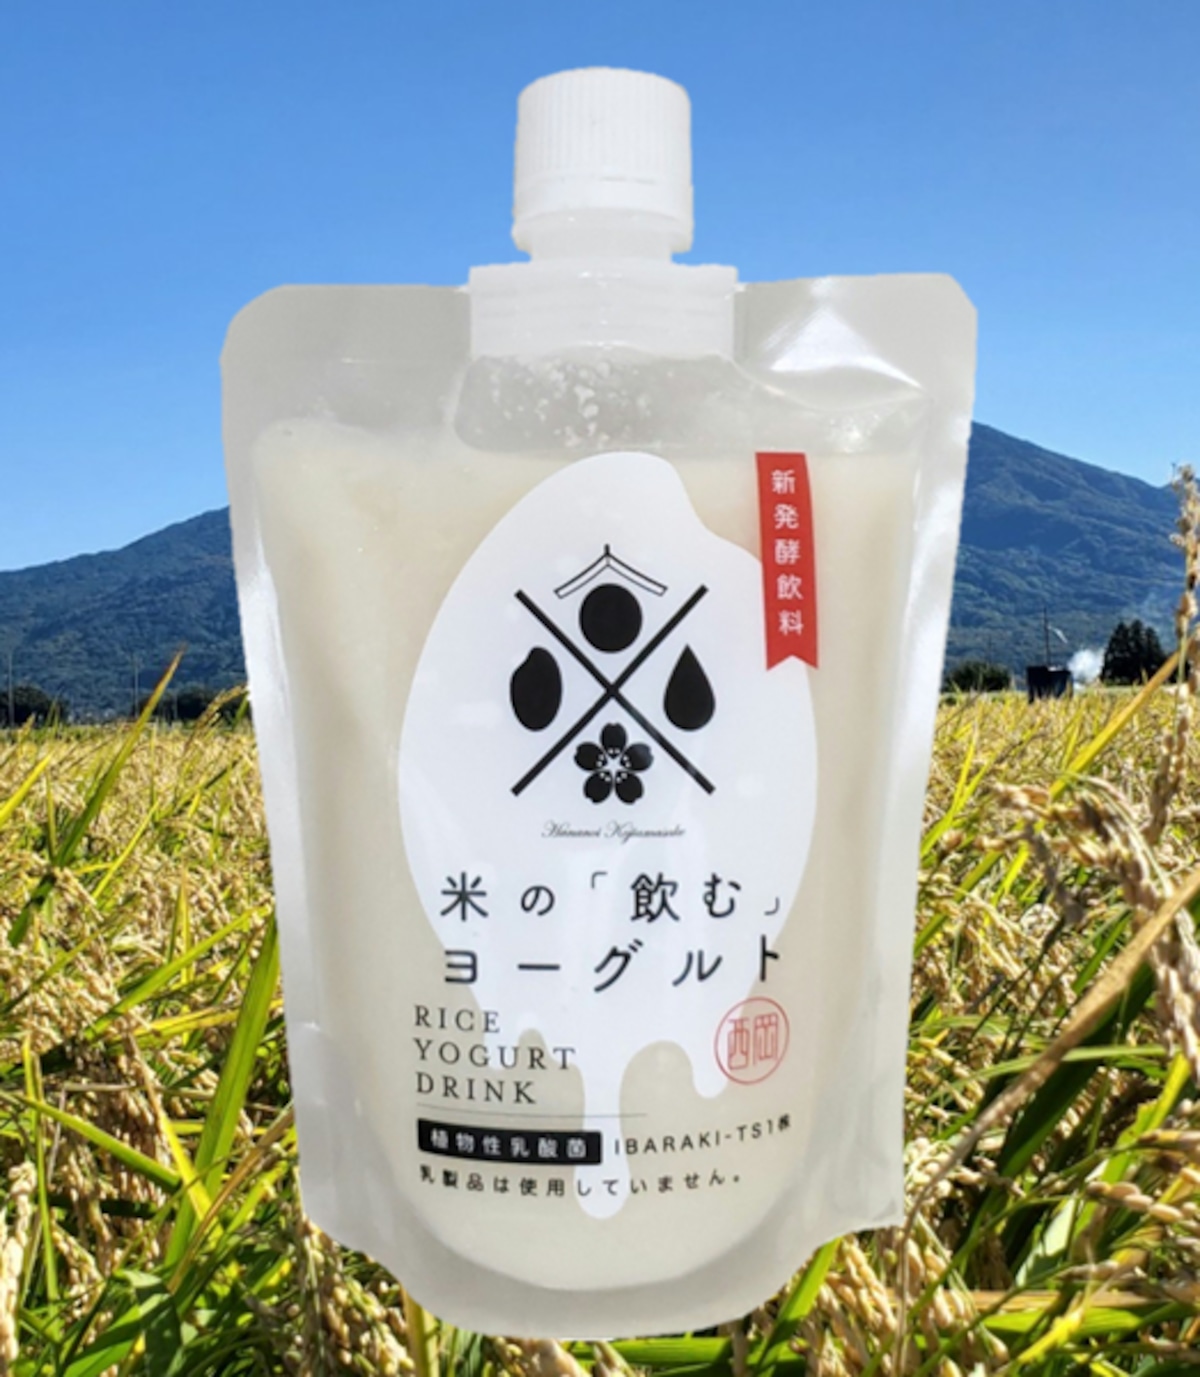 はなのい「米の飲むヨーグルト」200g | 日本酒「花の井」蔵元 西岡本店 powered by BASE